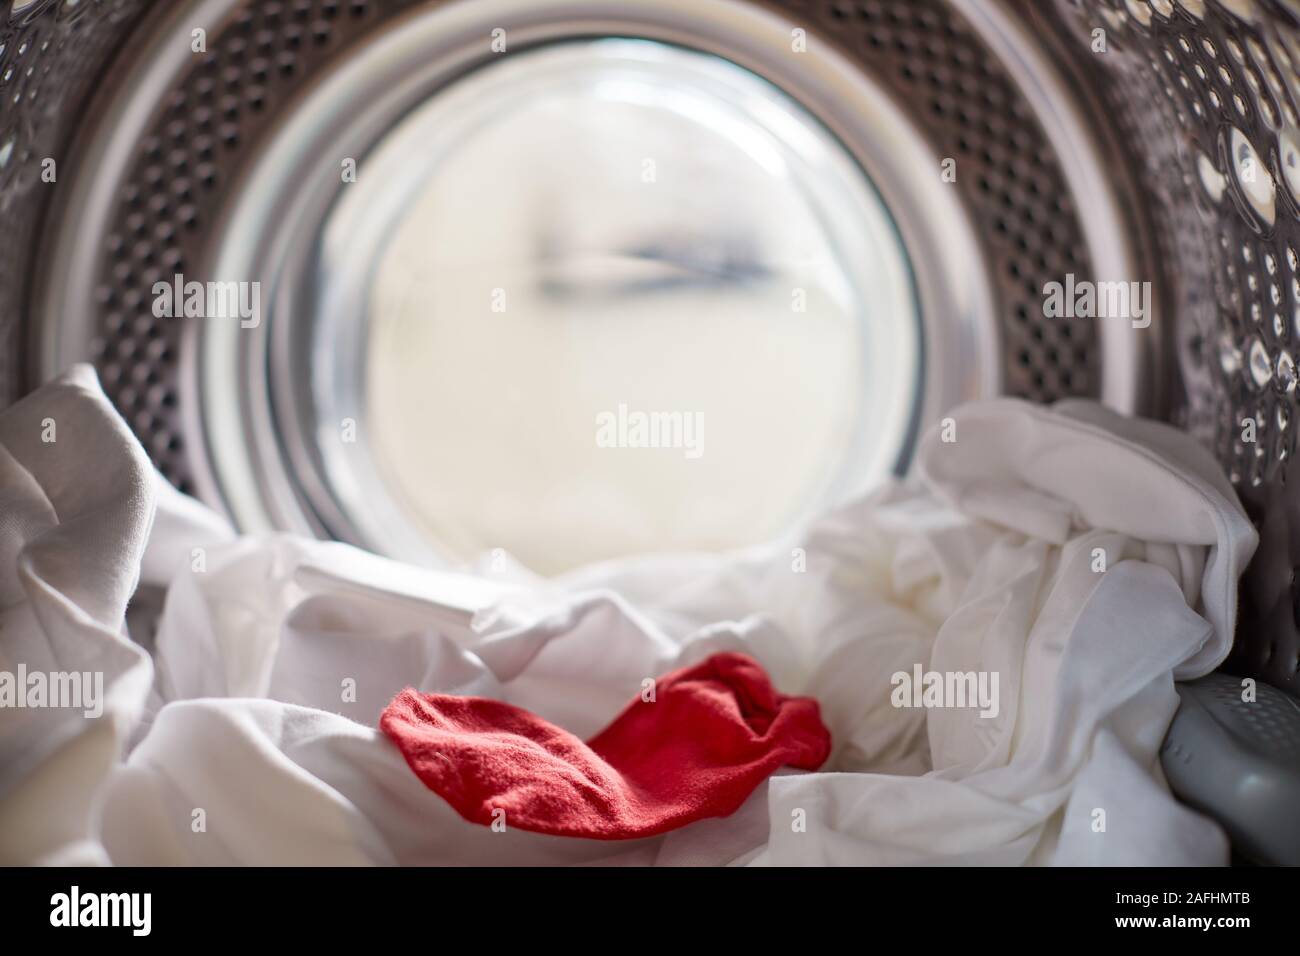 Vista dall'interno della macchina di lavaggio con calza rossa mescolato con il bianco Servizio Lavanderia Foto Stock